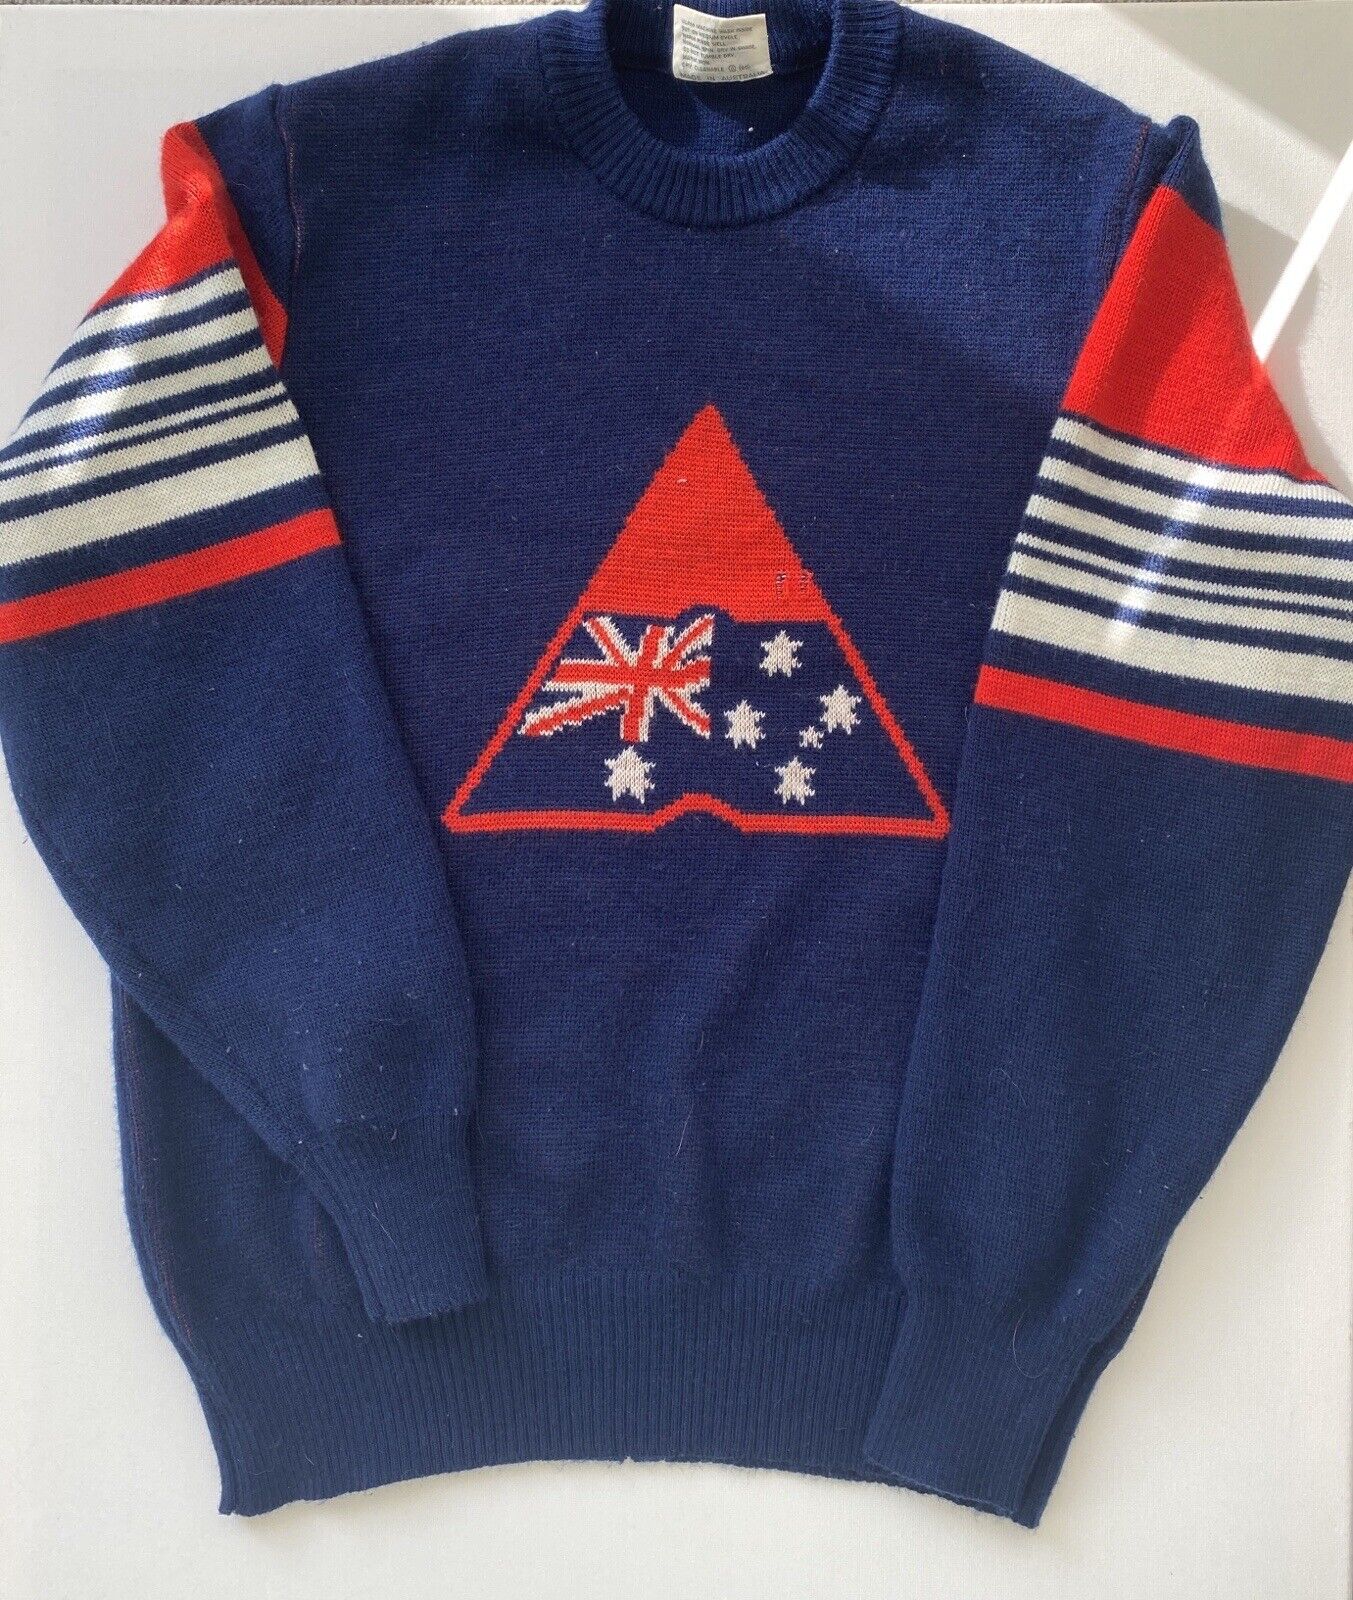 Vintage Retro Advance Australia Knitted Jumper Australiana 1980s